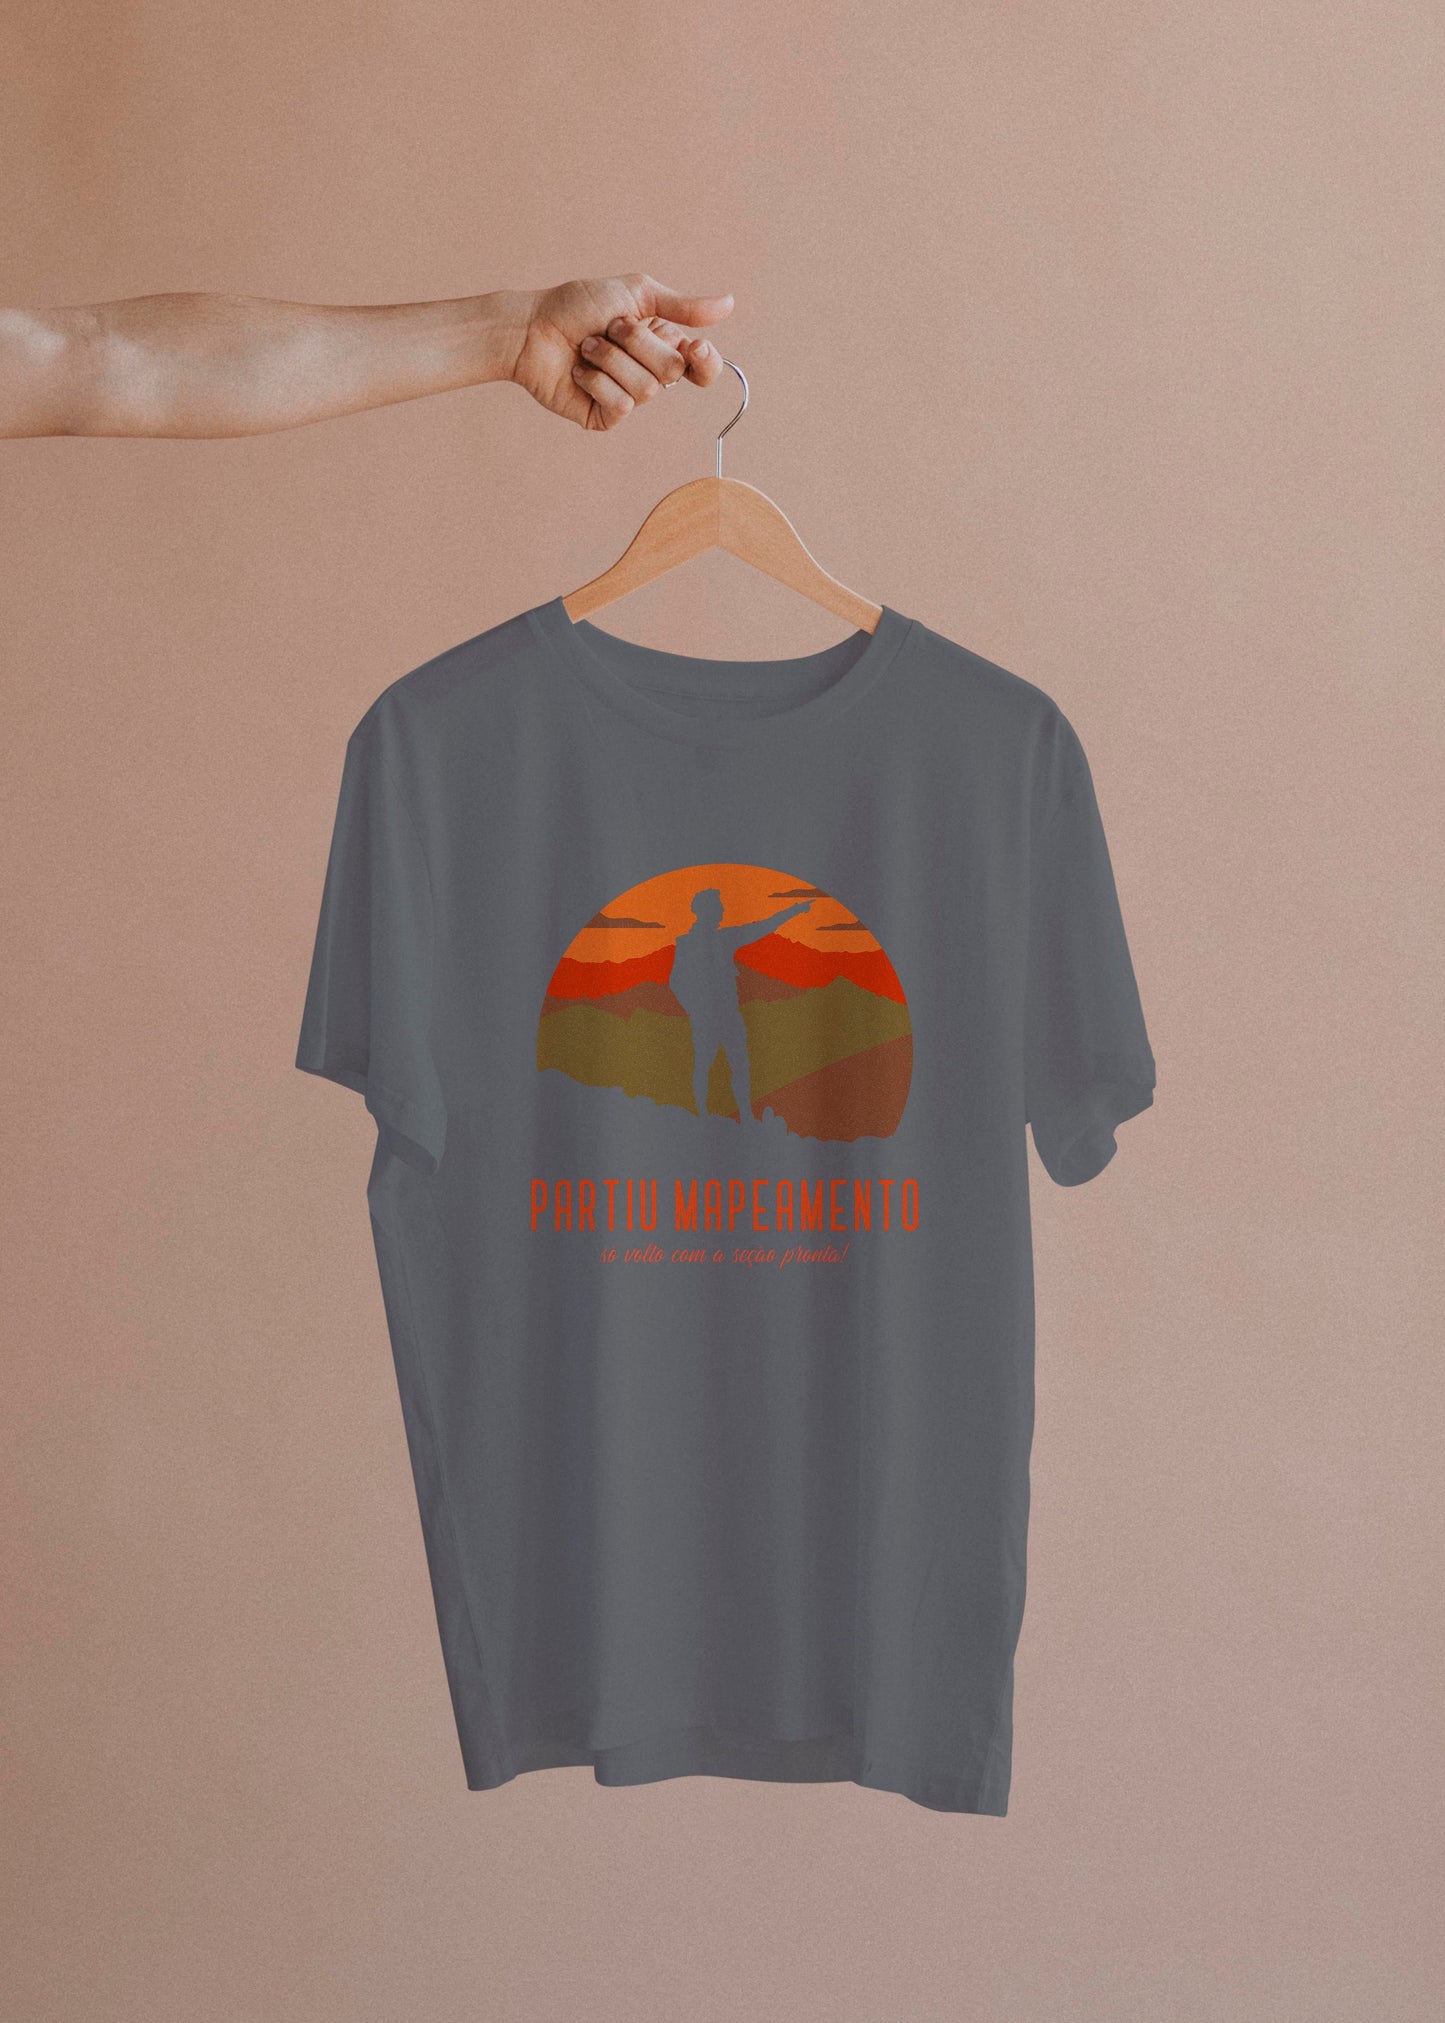 Camiseta Partiu Mapeamento -camiseta- Editora Datum